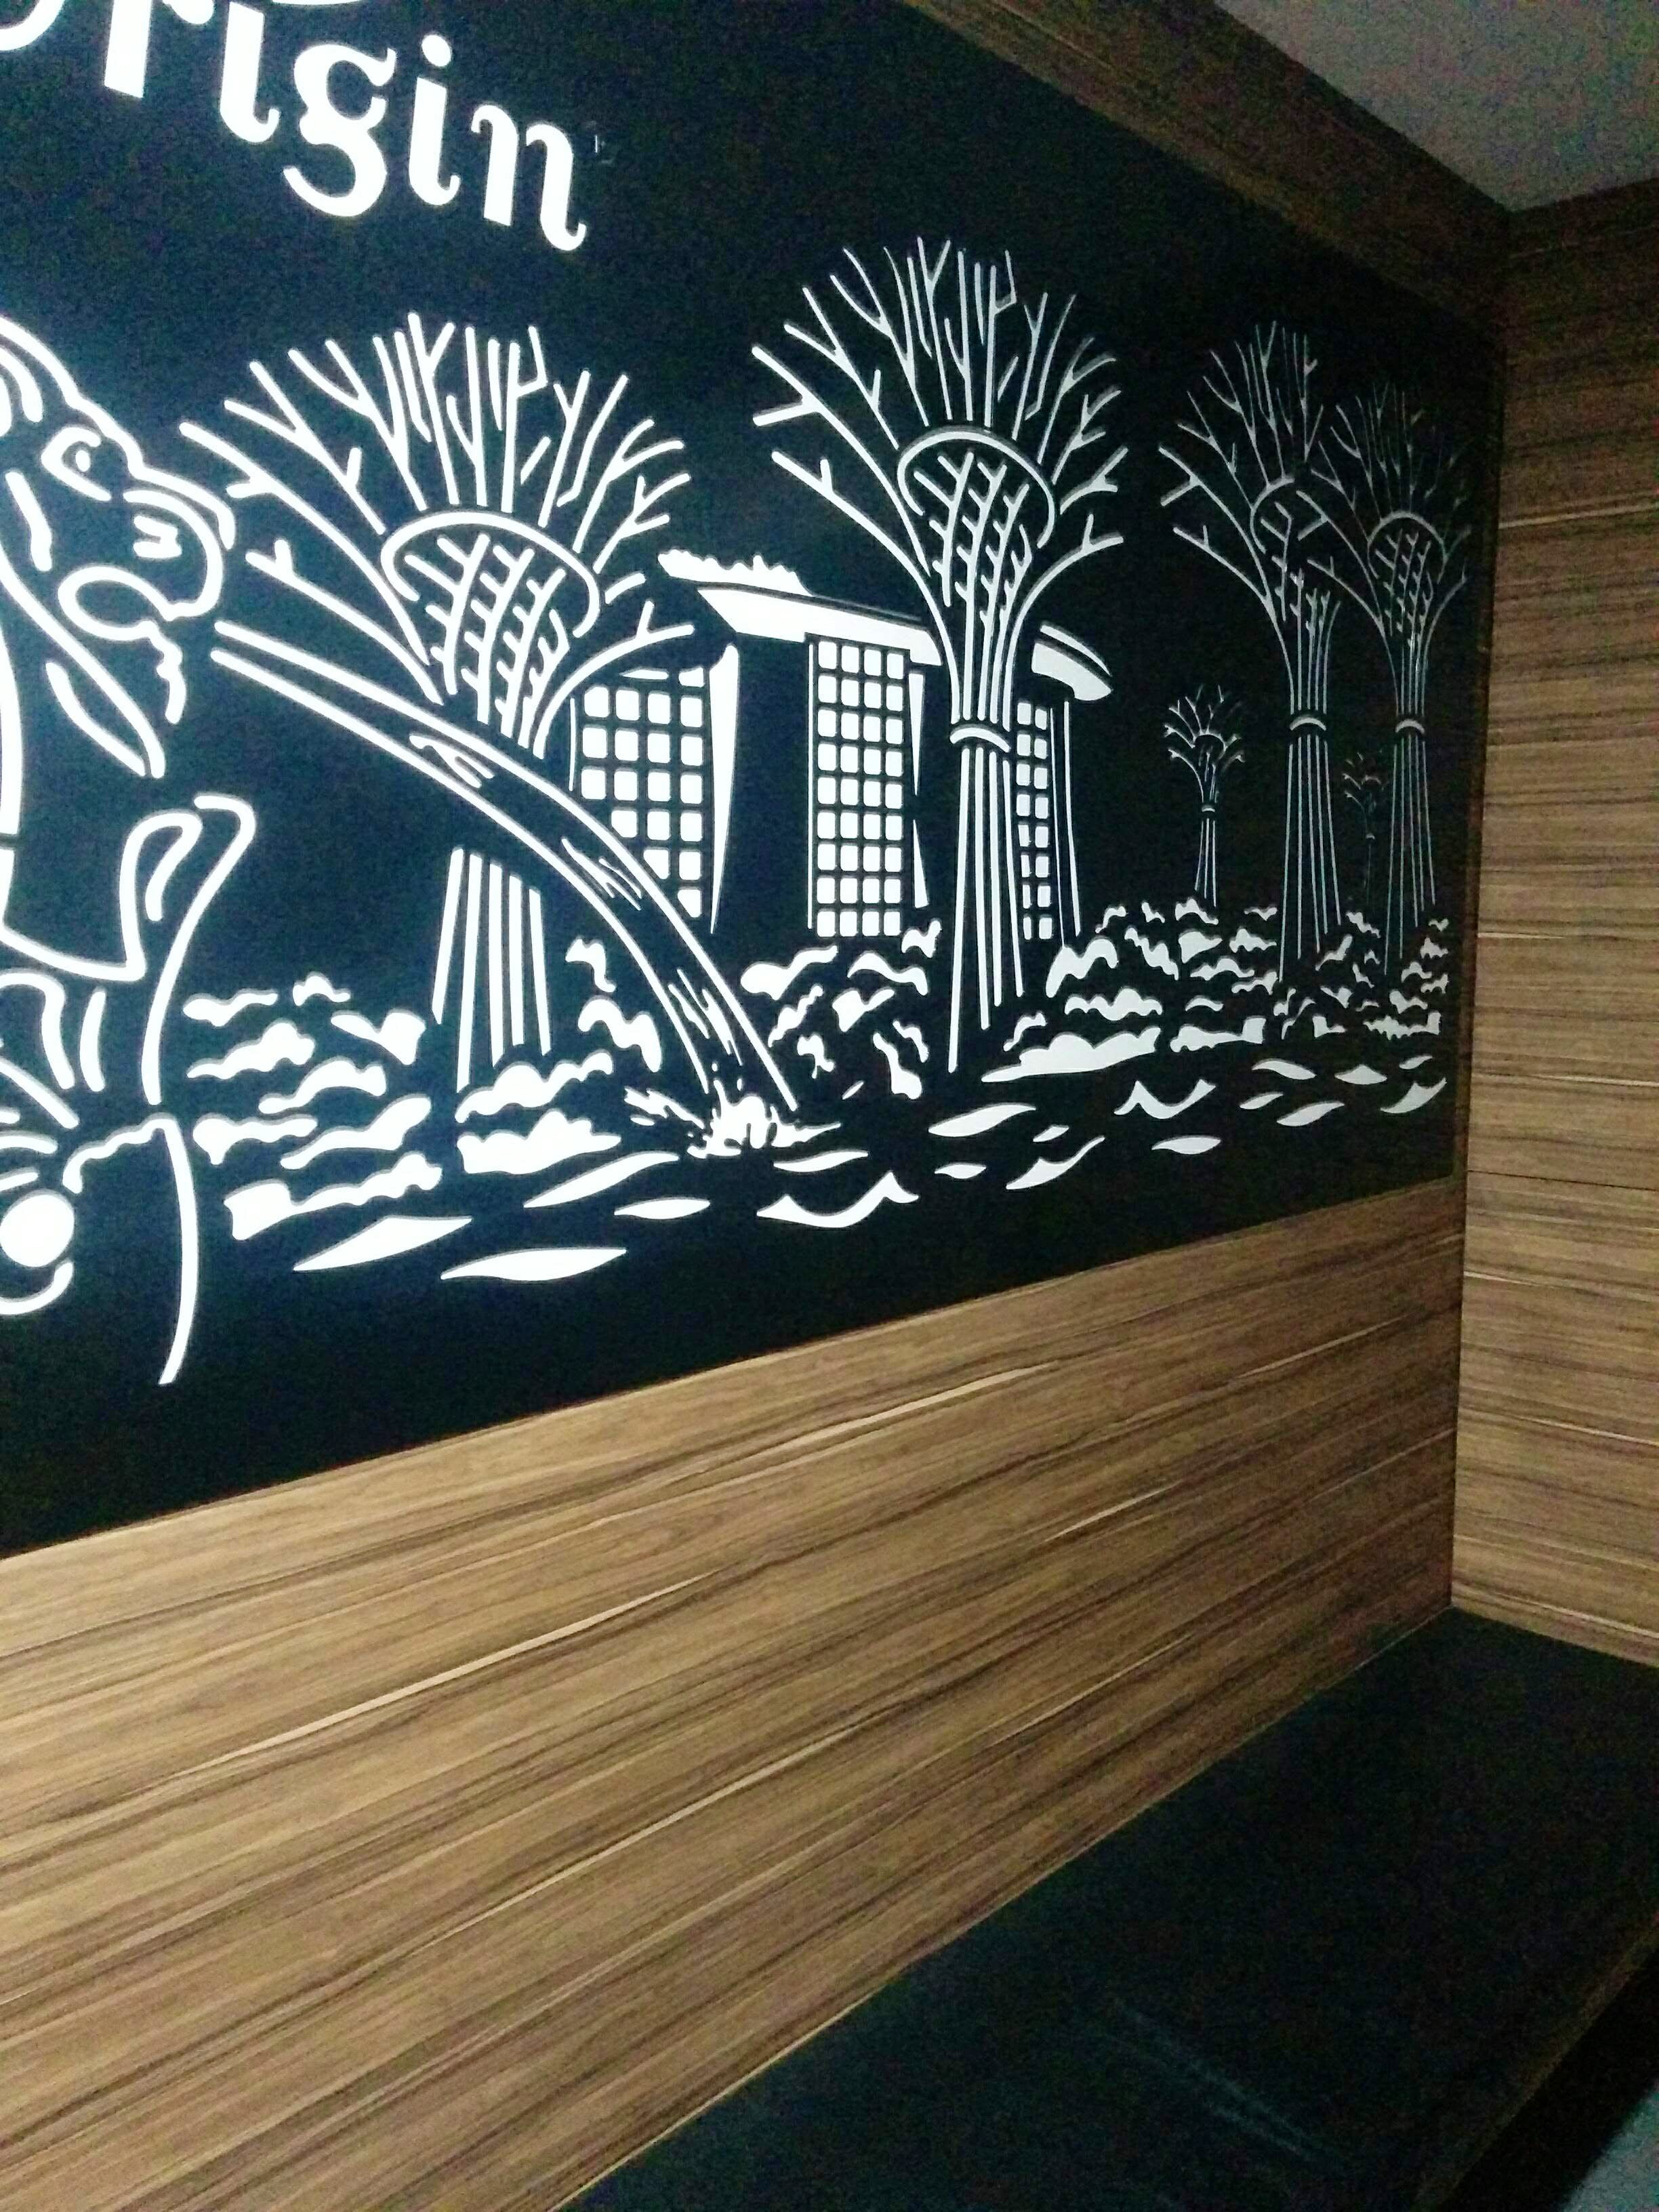 Wall,Tree,Design,Blackboard,Visual arts,Mural,Wood,Wall sticker,Art,Plant